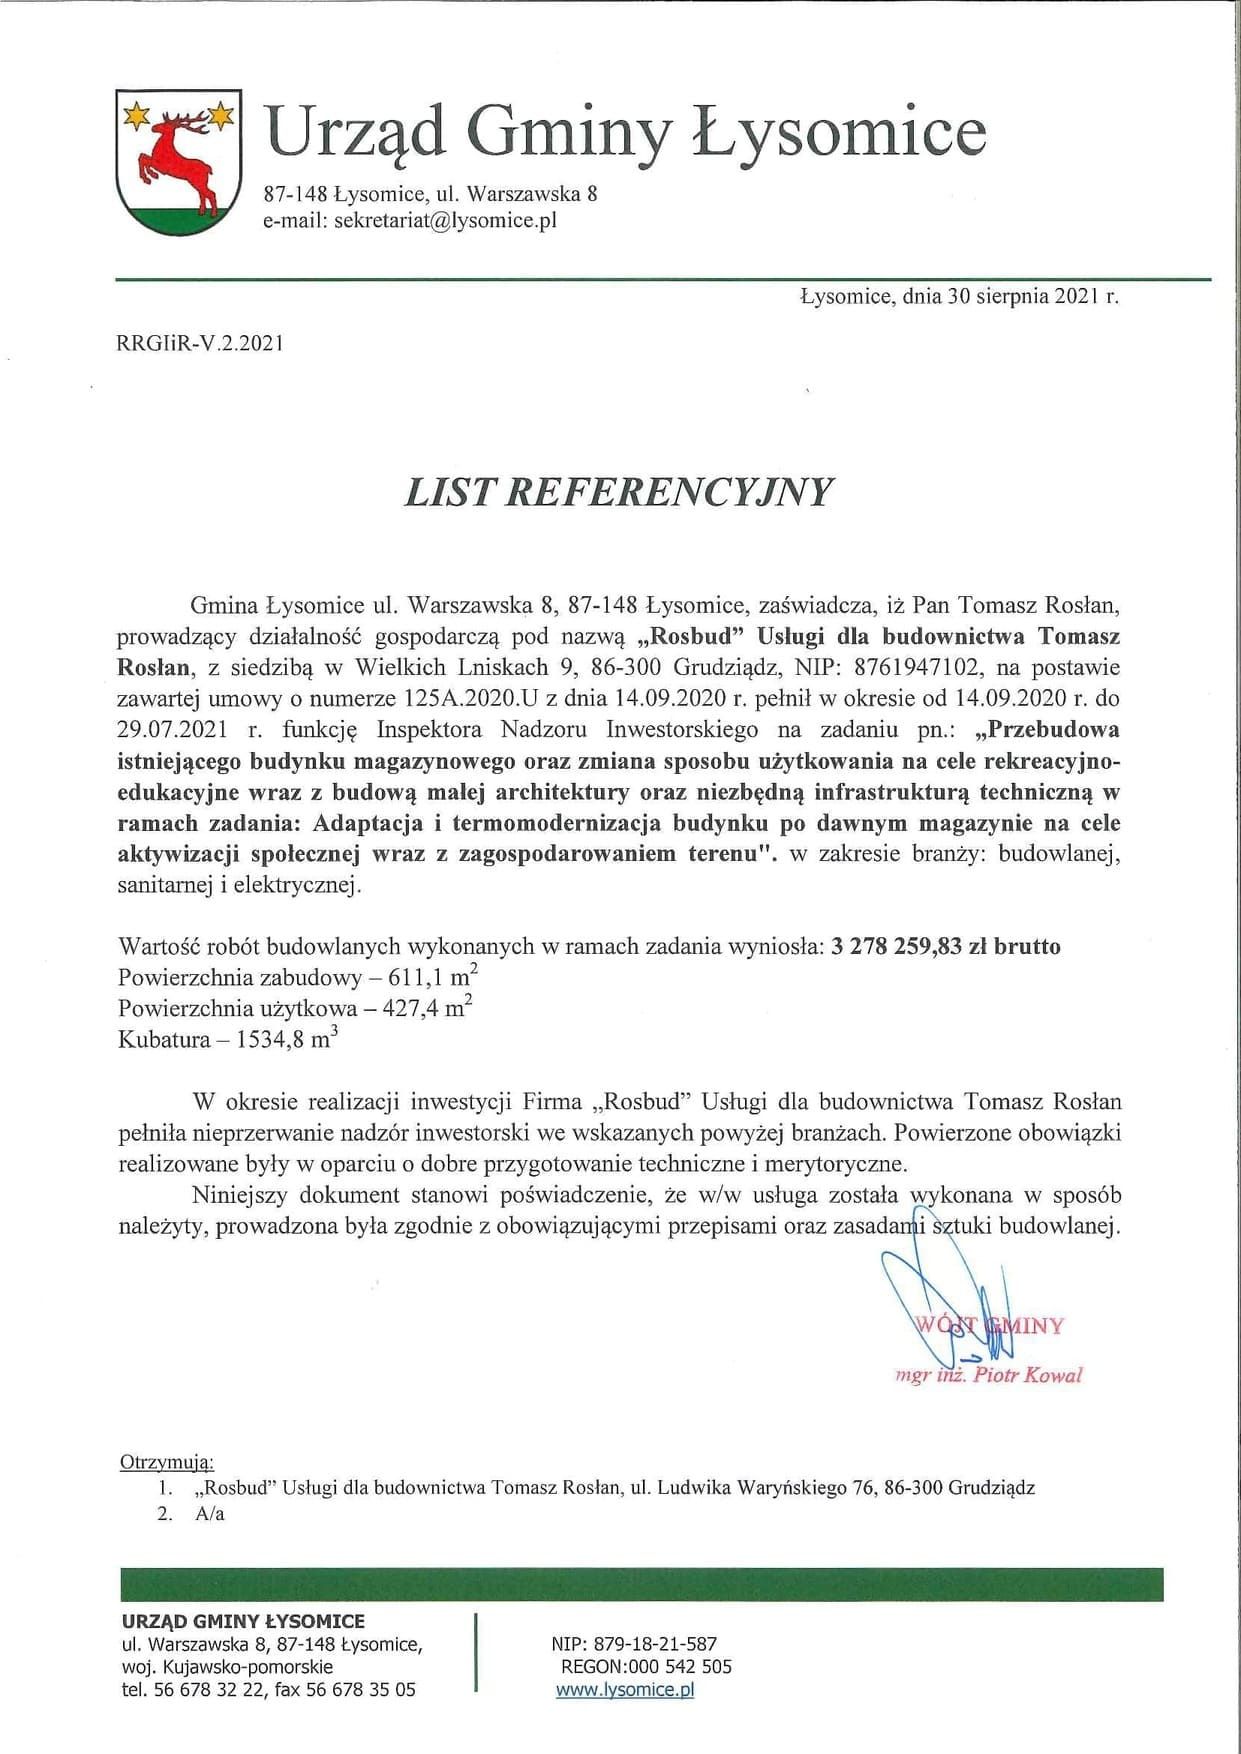 Urząd Gminy Łysomice list refencyjny sierpień 2021